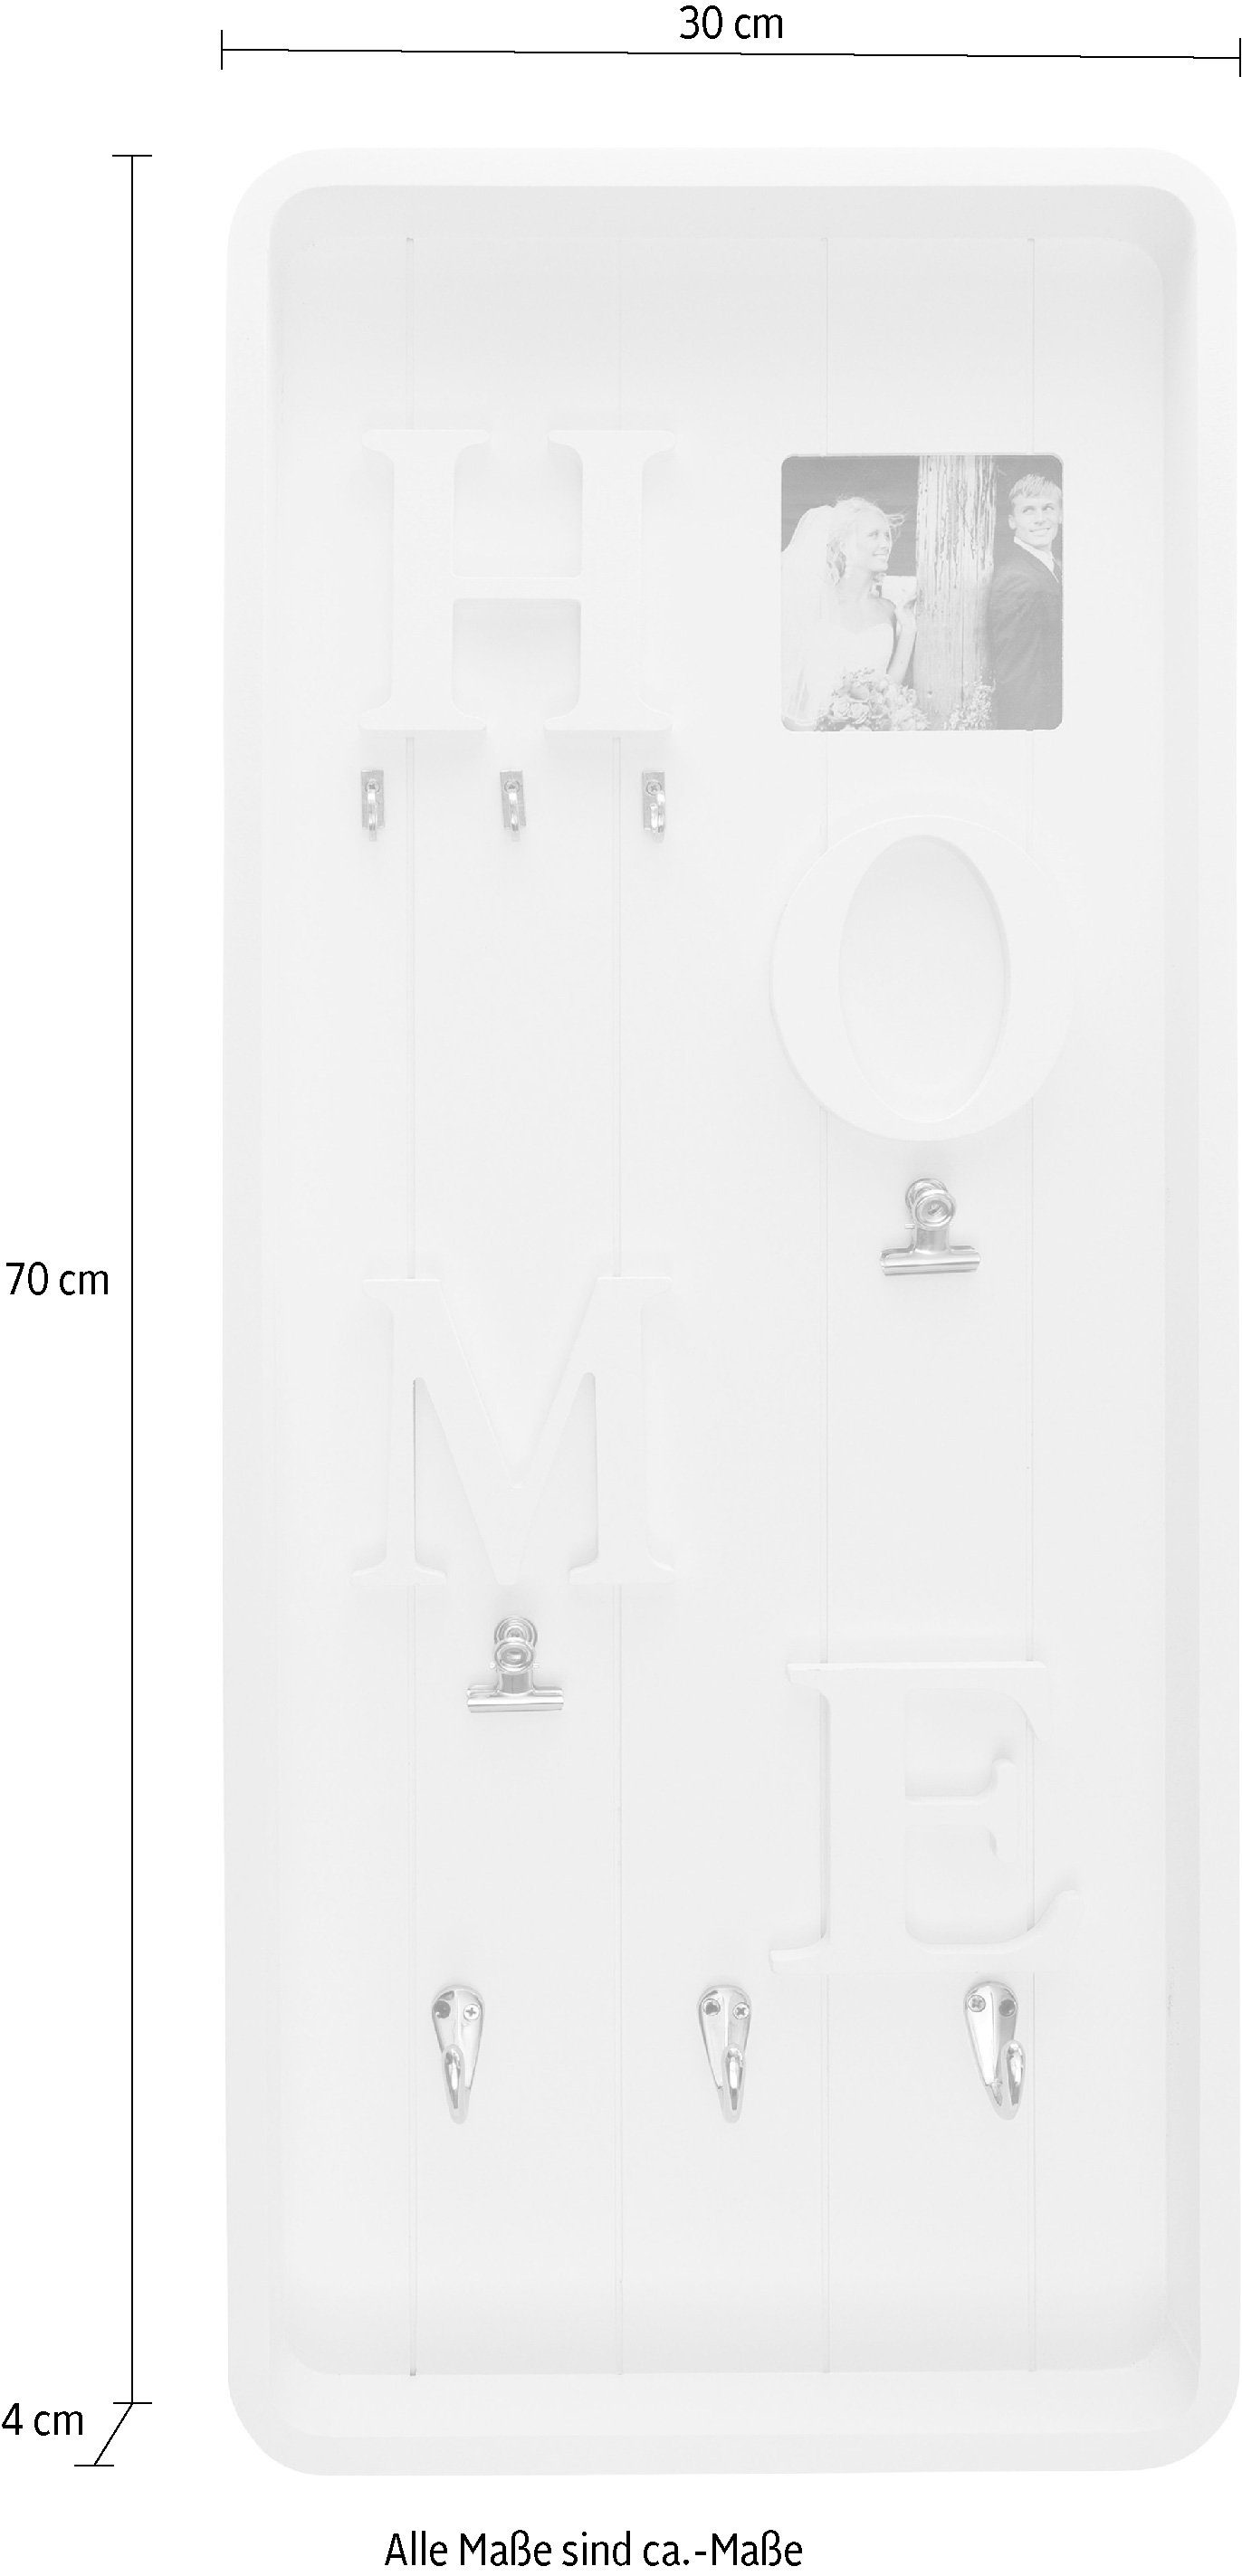 Myflair Möbel Memoboard Schriftzug Valerina, Klemmen mit & mit & Accessoires weiß, Schlüsselbrett, Haken